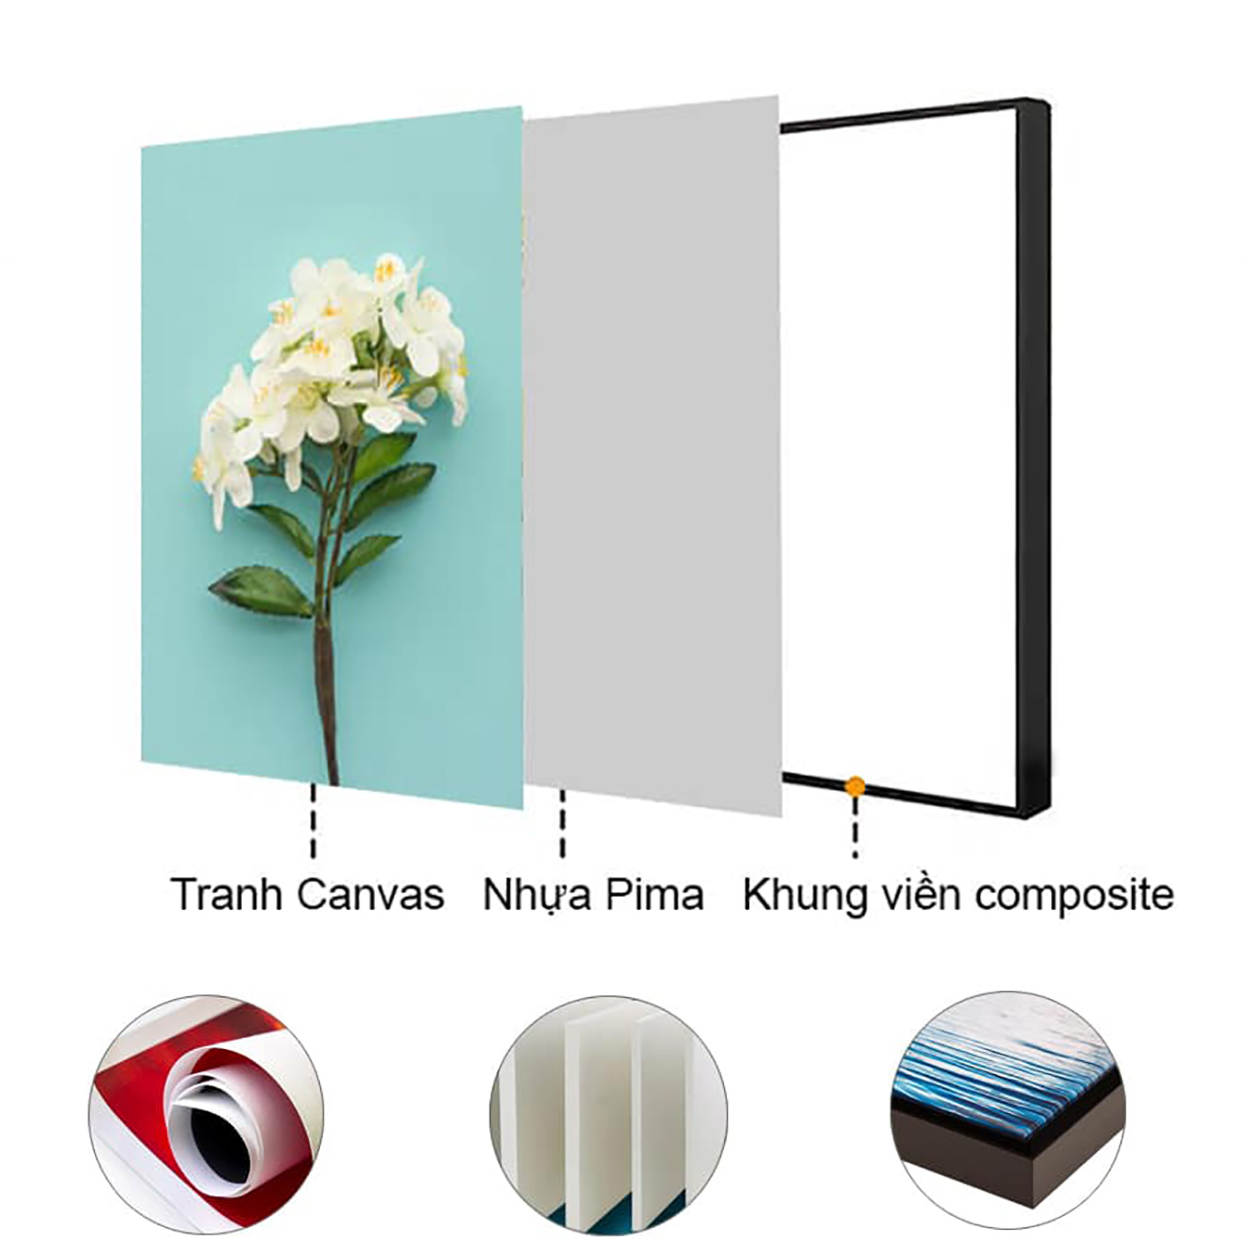 Tranh treo tường – Tranh trừu tượng cô gái và hoa CA507 - Vải canvas kim tuyến  cán PiMa - công nghệ in UV - Khung viền composite - bền màu 10 năm.